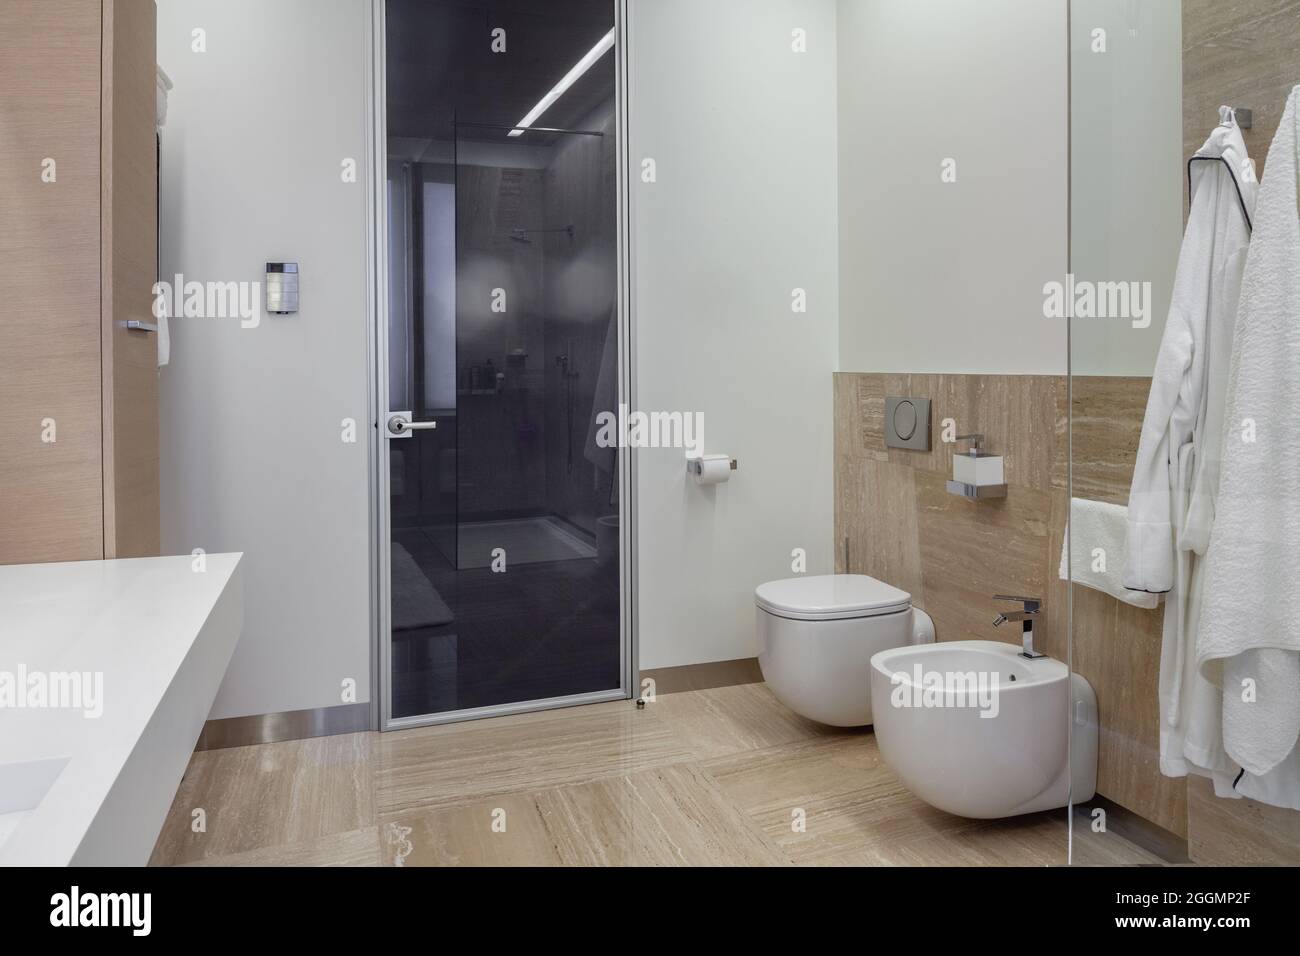 Salle de bains intérieure avec toilettes murales, bidet et cabine de douche Banque D'Images